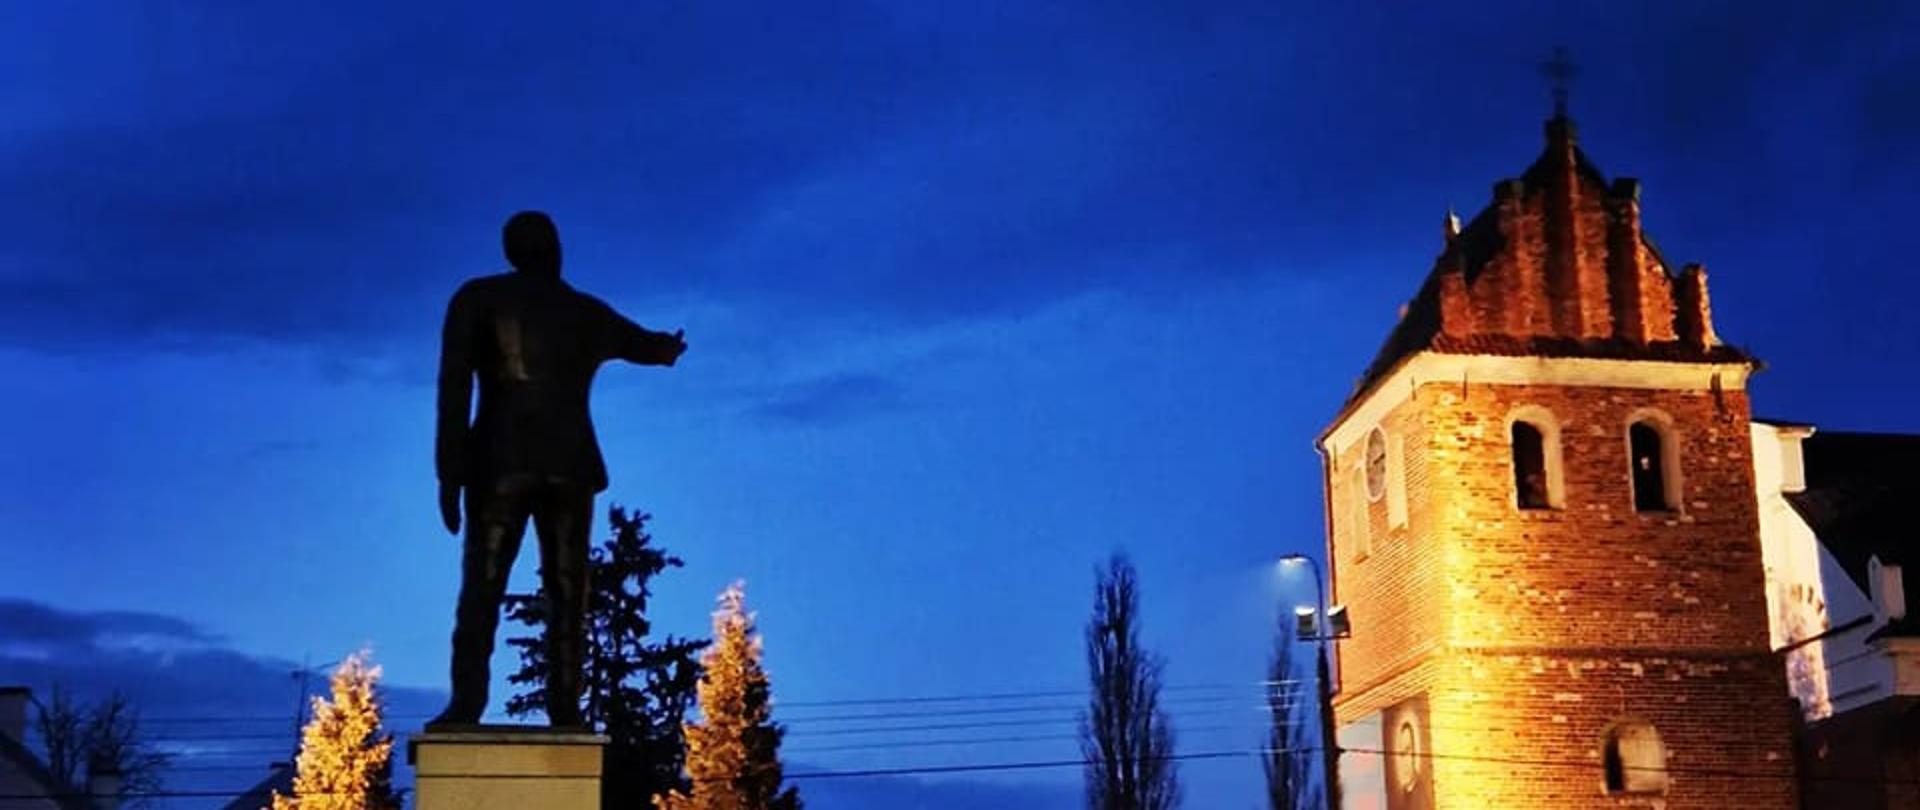 Zdjęcie wykonane o świcie przedstawia rzeźbę burmistrza Matuszewskiego oraz dzwonnicę kościoła farnego w Przasnyszu.